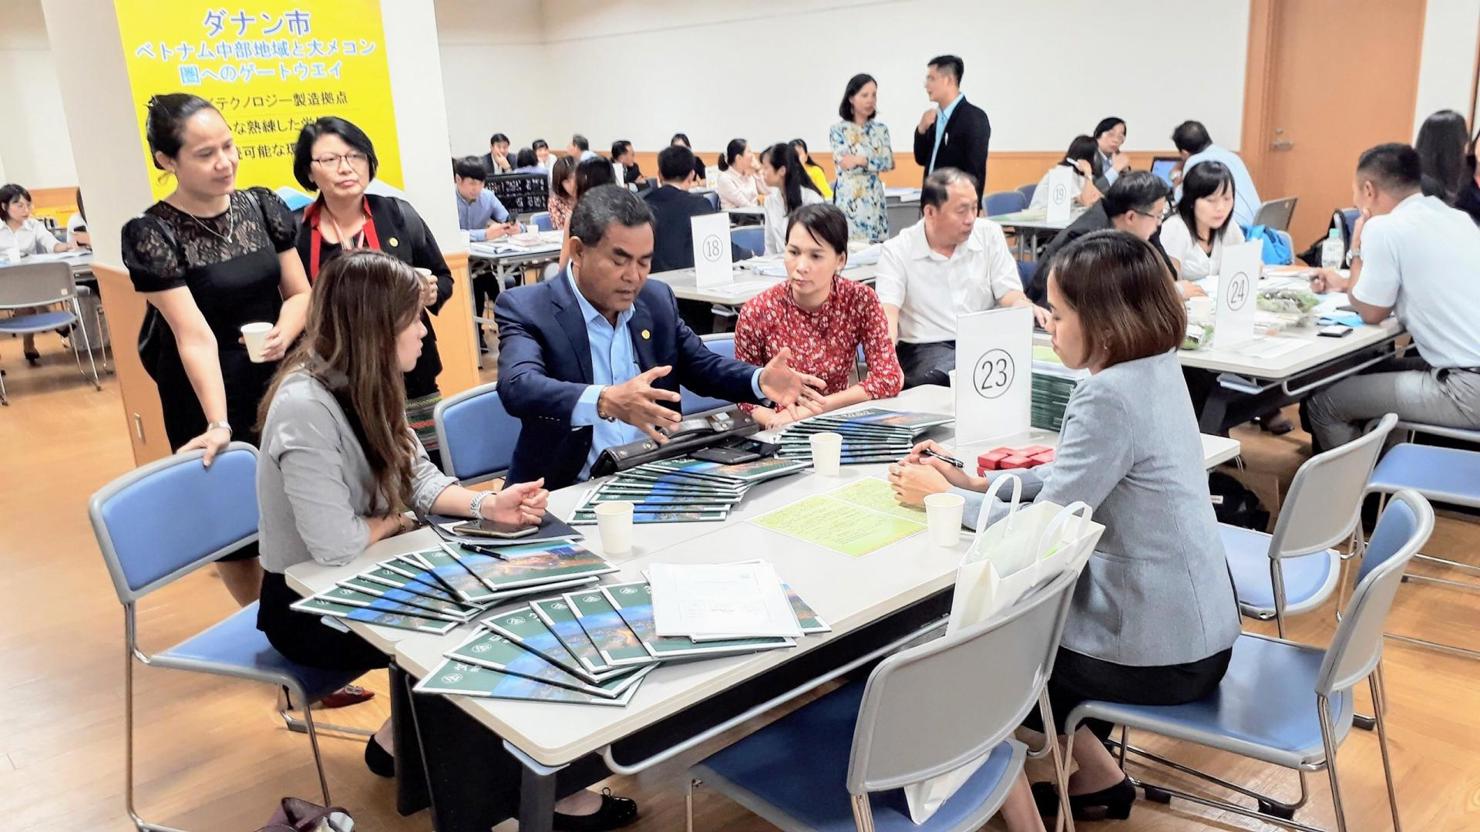 Đoàn công tác của tỉnh Đắk Lắk làm việc tại Nhật Bản trong khuôn khổ Hội thảo hợp tác thương mại đầu tư Việt Nam - Nhật Bản năm 2019. Ảnh: Sở Công thương cung cấp